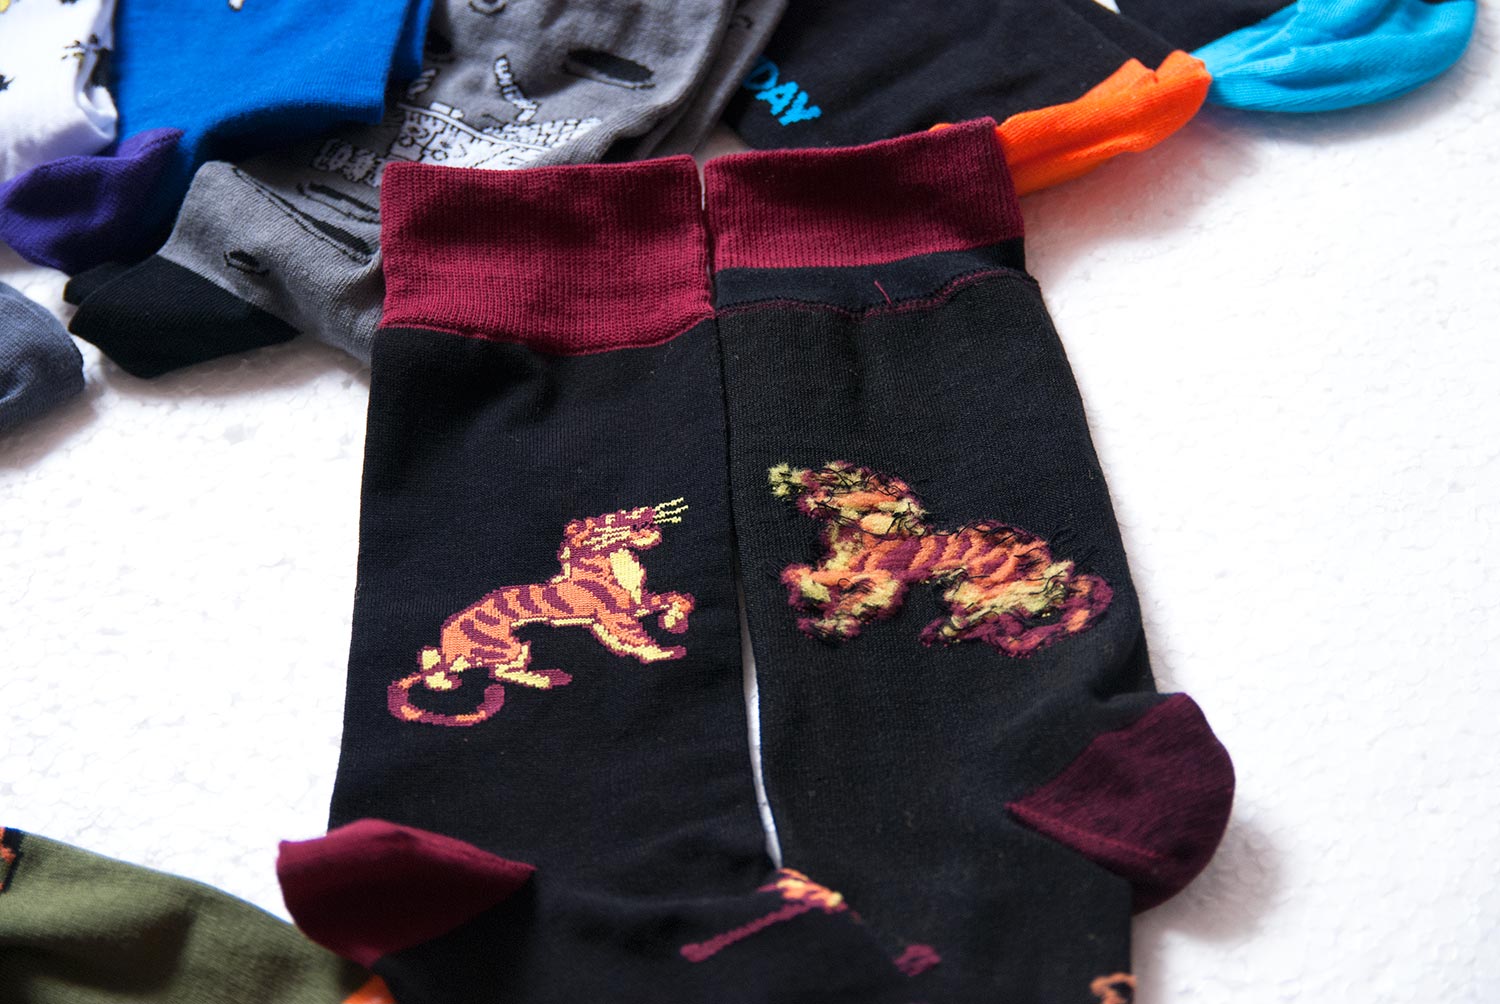 Носки St.Friday Socks с Шер-Ханом. Носок слева показан лицевой стороной, справа - изнаночной Изображение: ©bracatuS.com